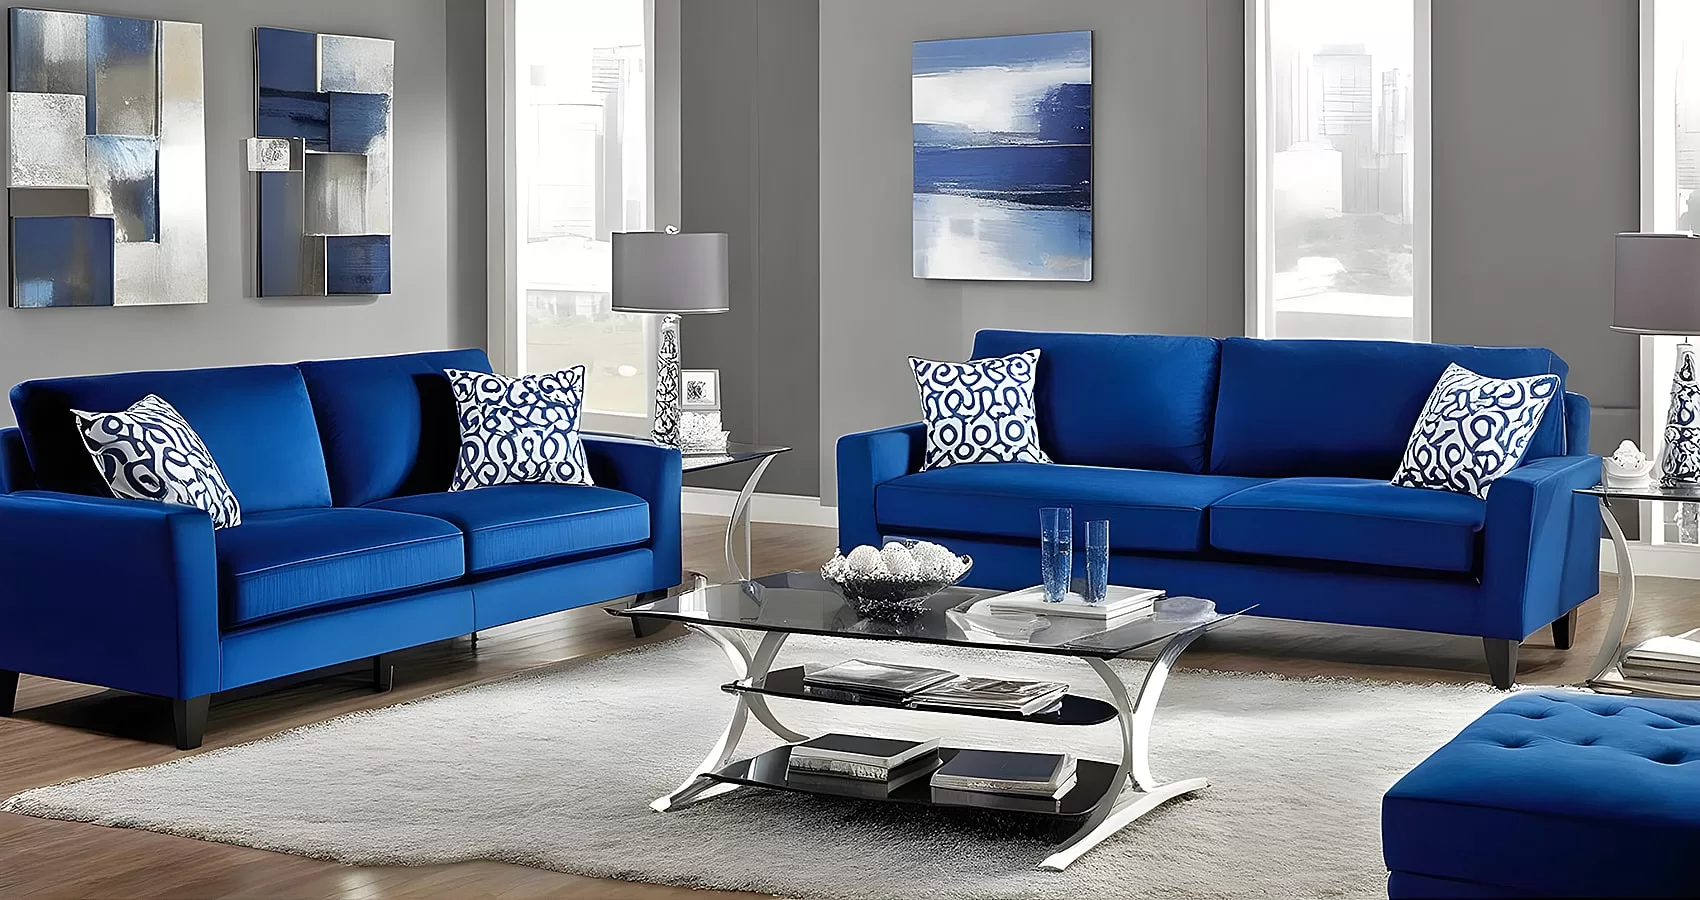 Royal Blue Sofa | Royal Blue Couch | Royal Blue Sofa Set